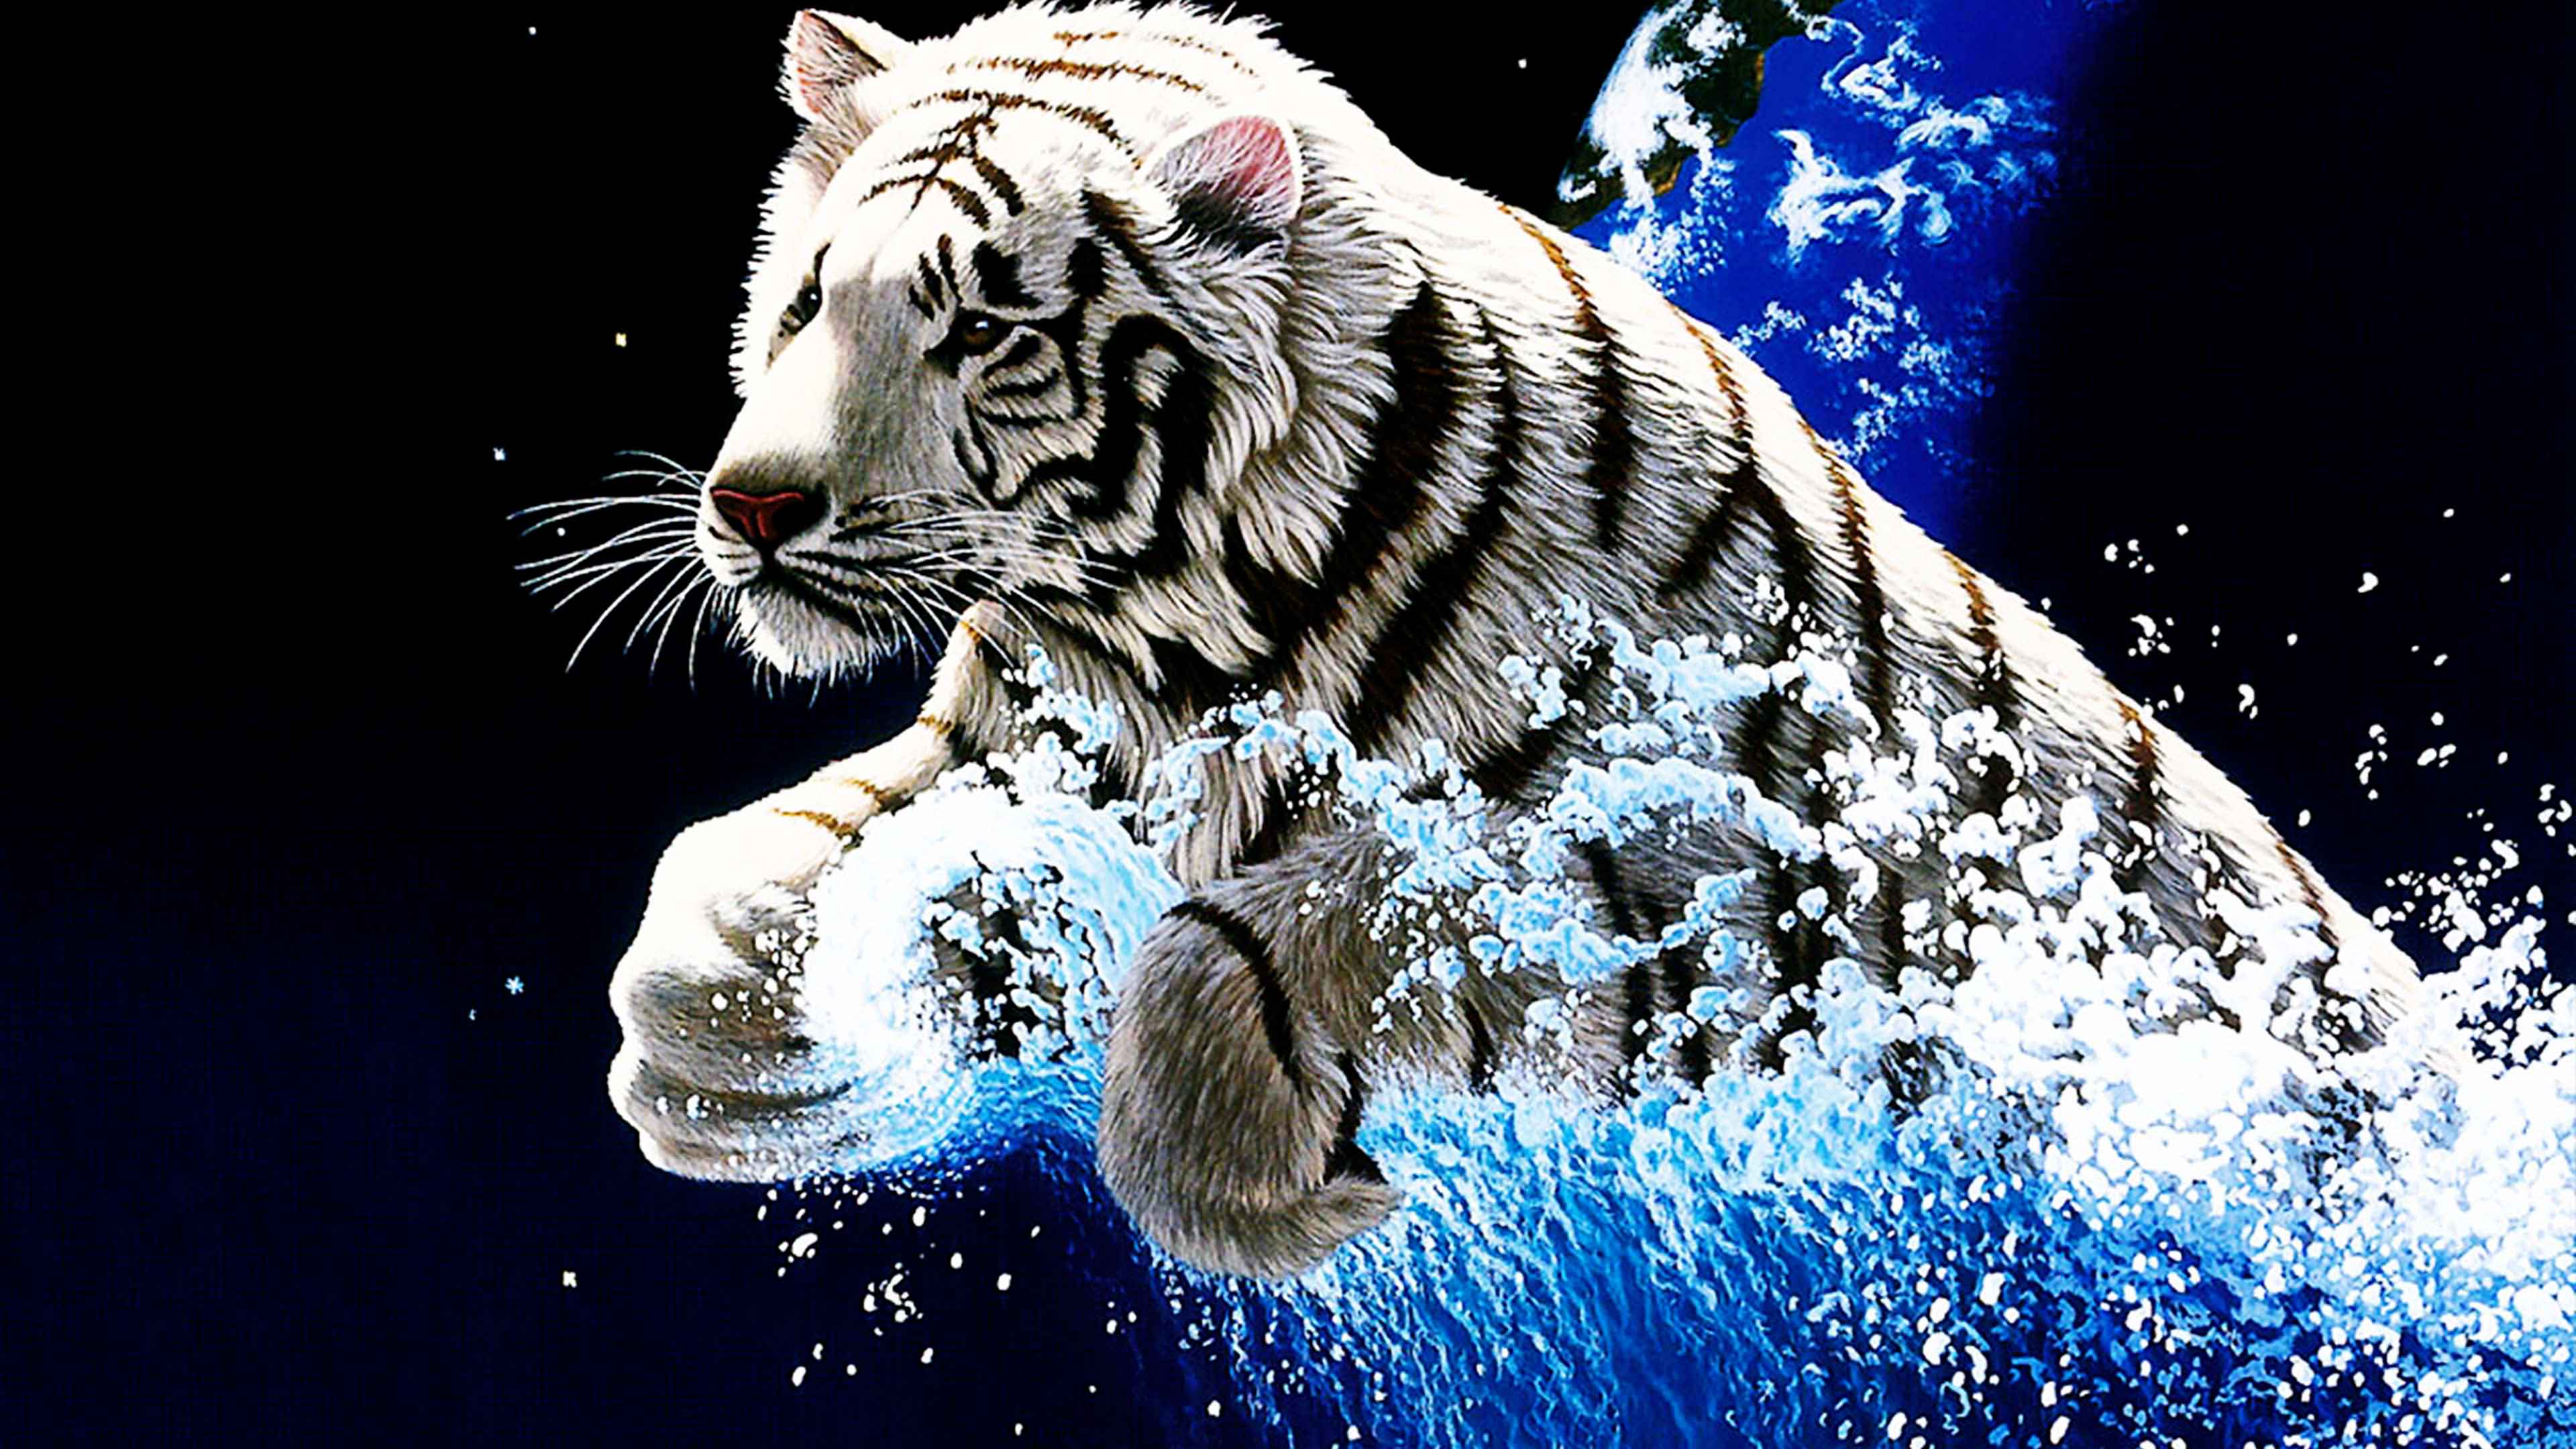 Best Wallpaper Tiger 3D High Quality Widescreen D Wide Animals